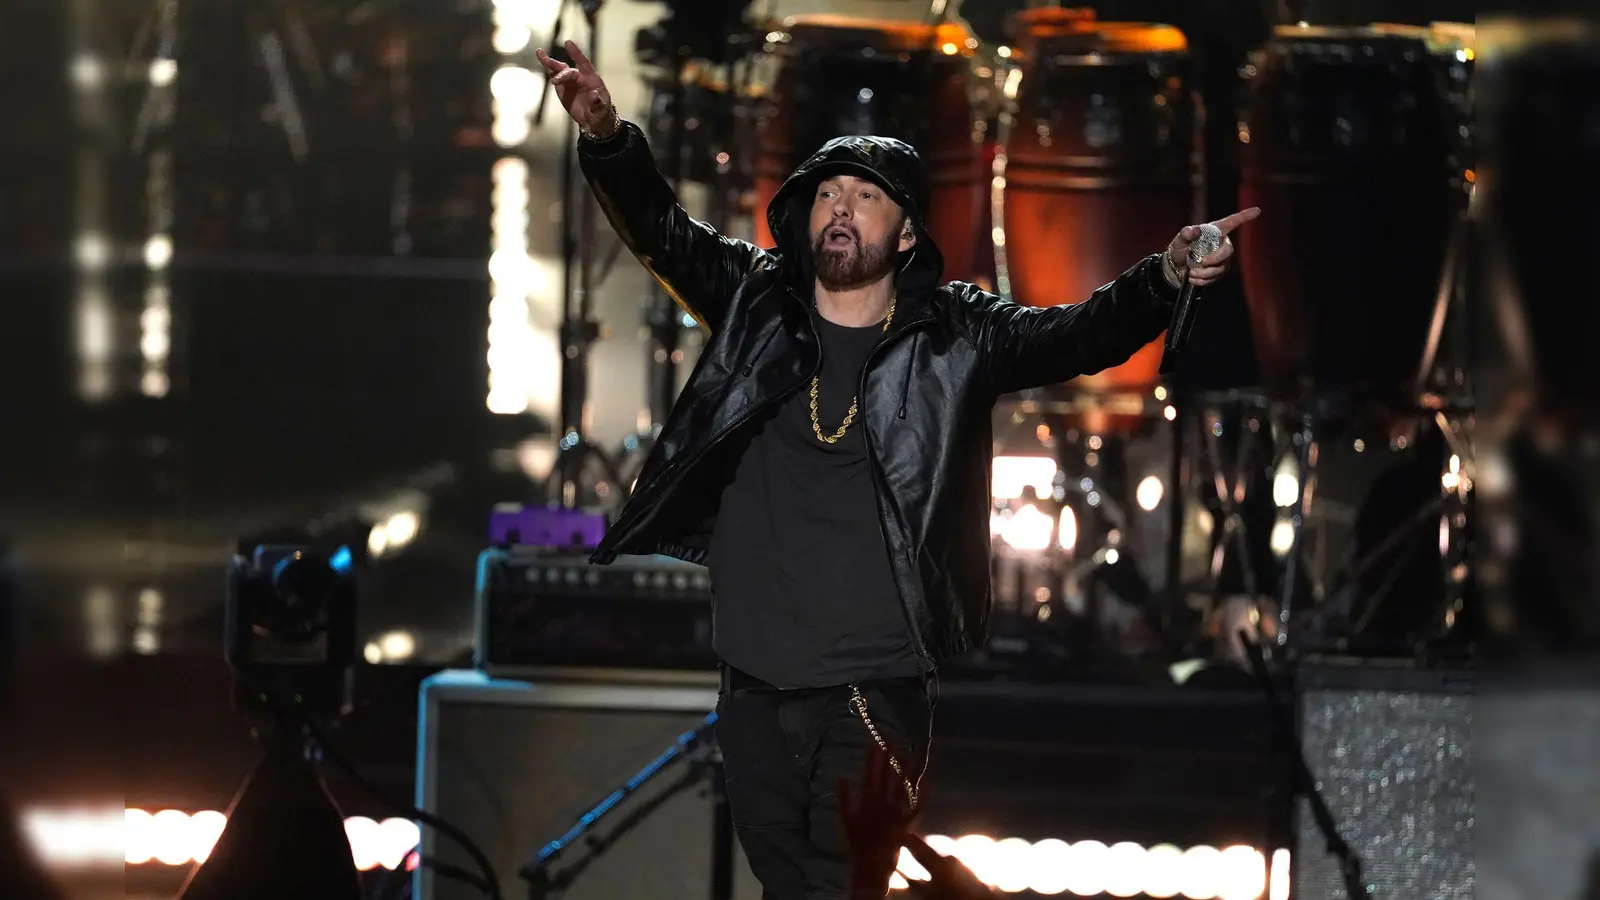 Eminem stimmt mit Gruselvideo auf neues Album ein  (Bild: Chris Pizzello/Invision/dpa)